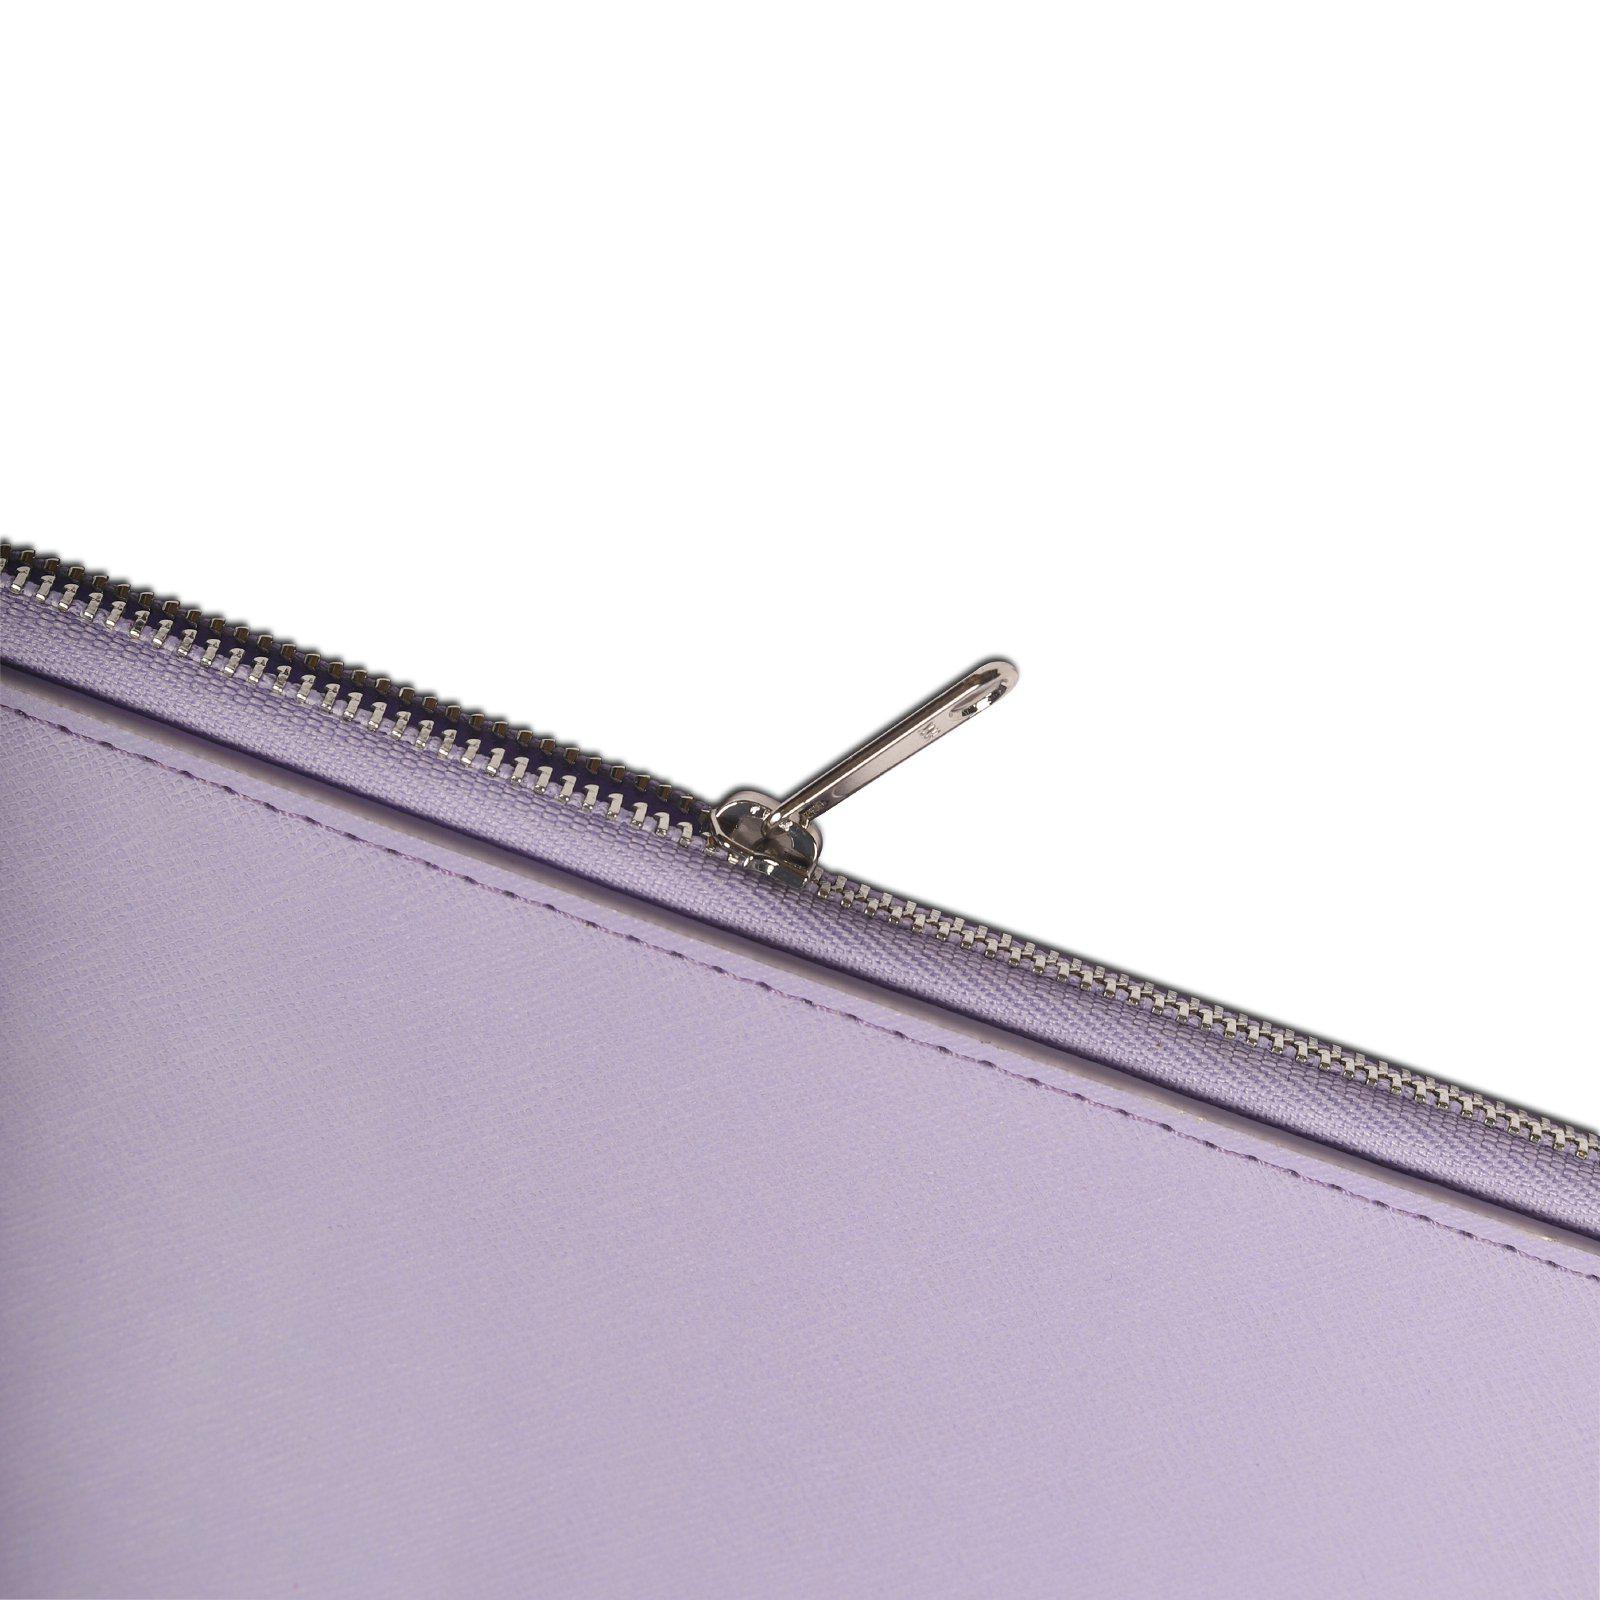 Laptop Case 16″ Lavender